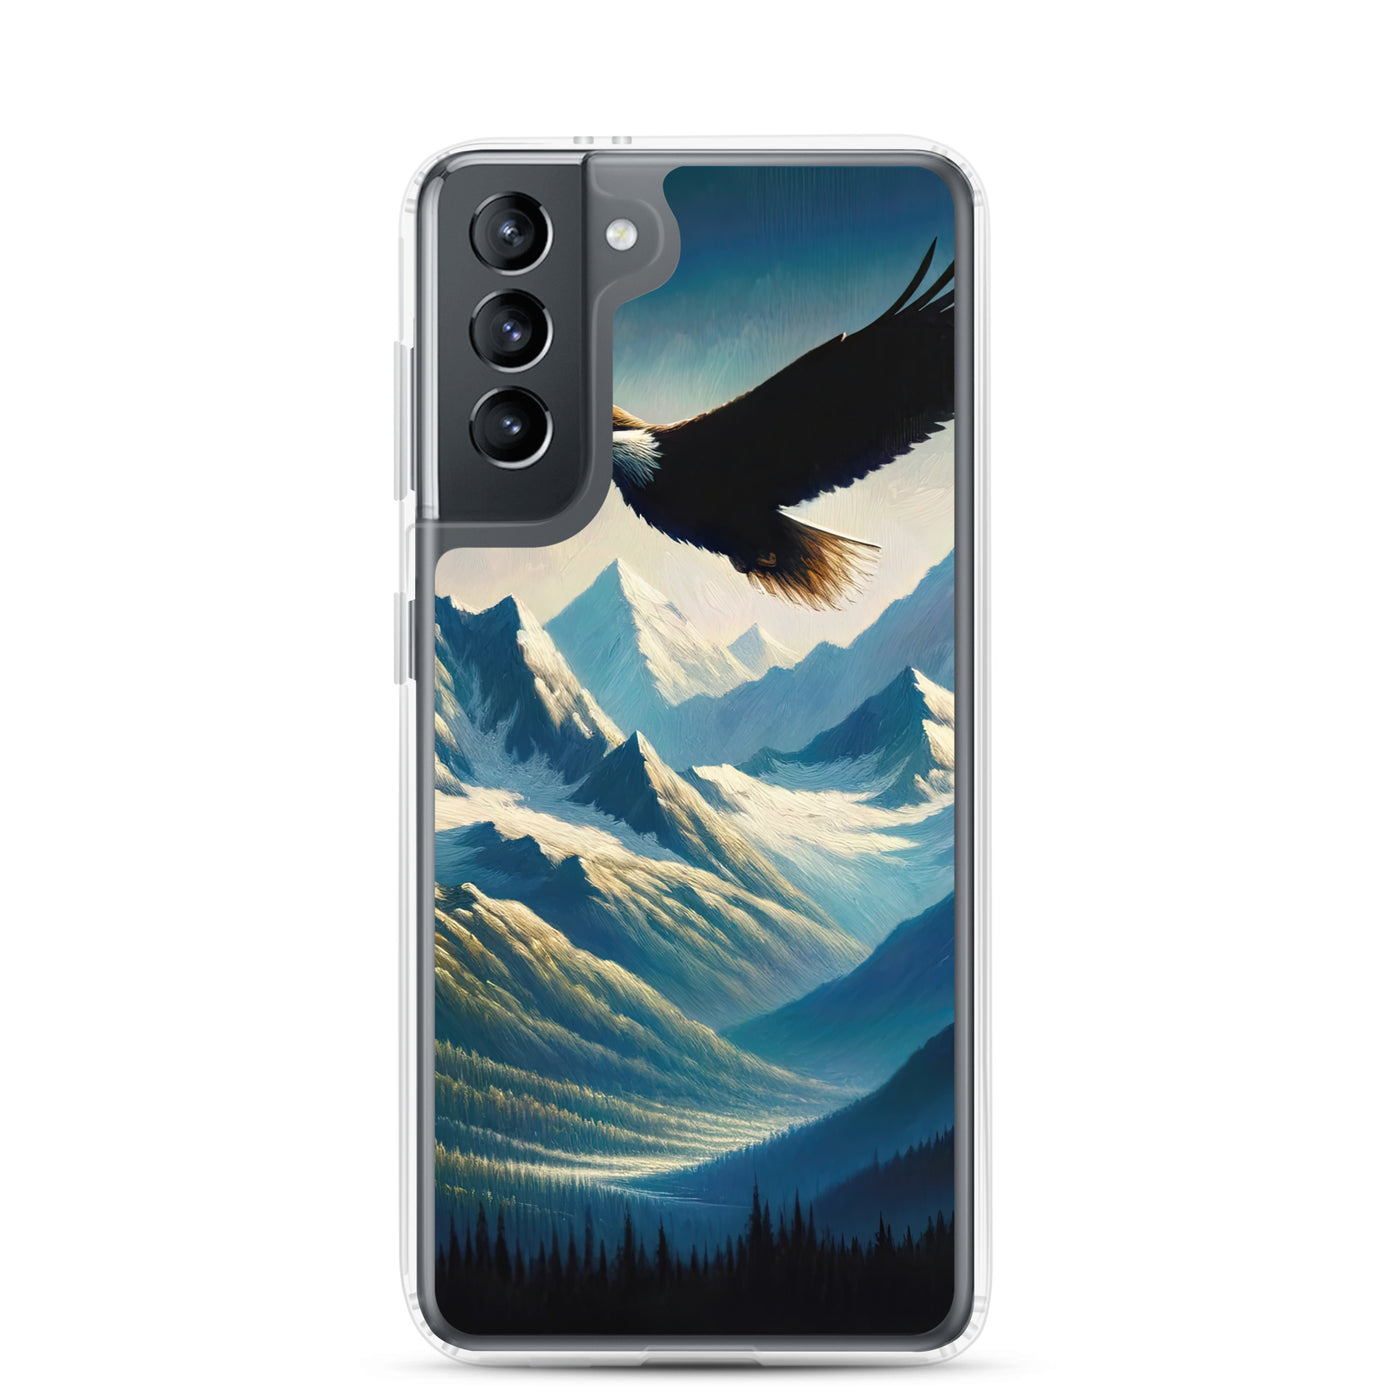 Ölgemälde eines Adlers vor schneebedeckten Bergsilhouetten - Samsung Schutzhülle (durchsichtig) berge xxx yyy zzz Samsung Galaxy S21